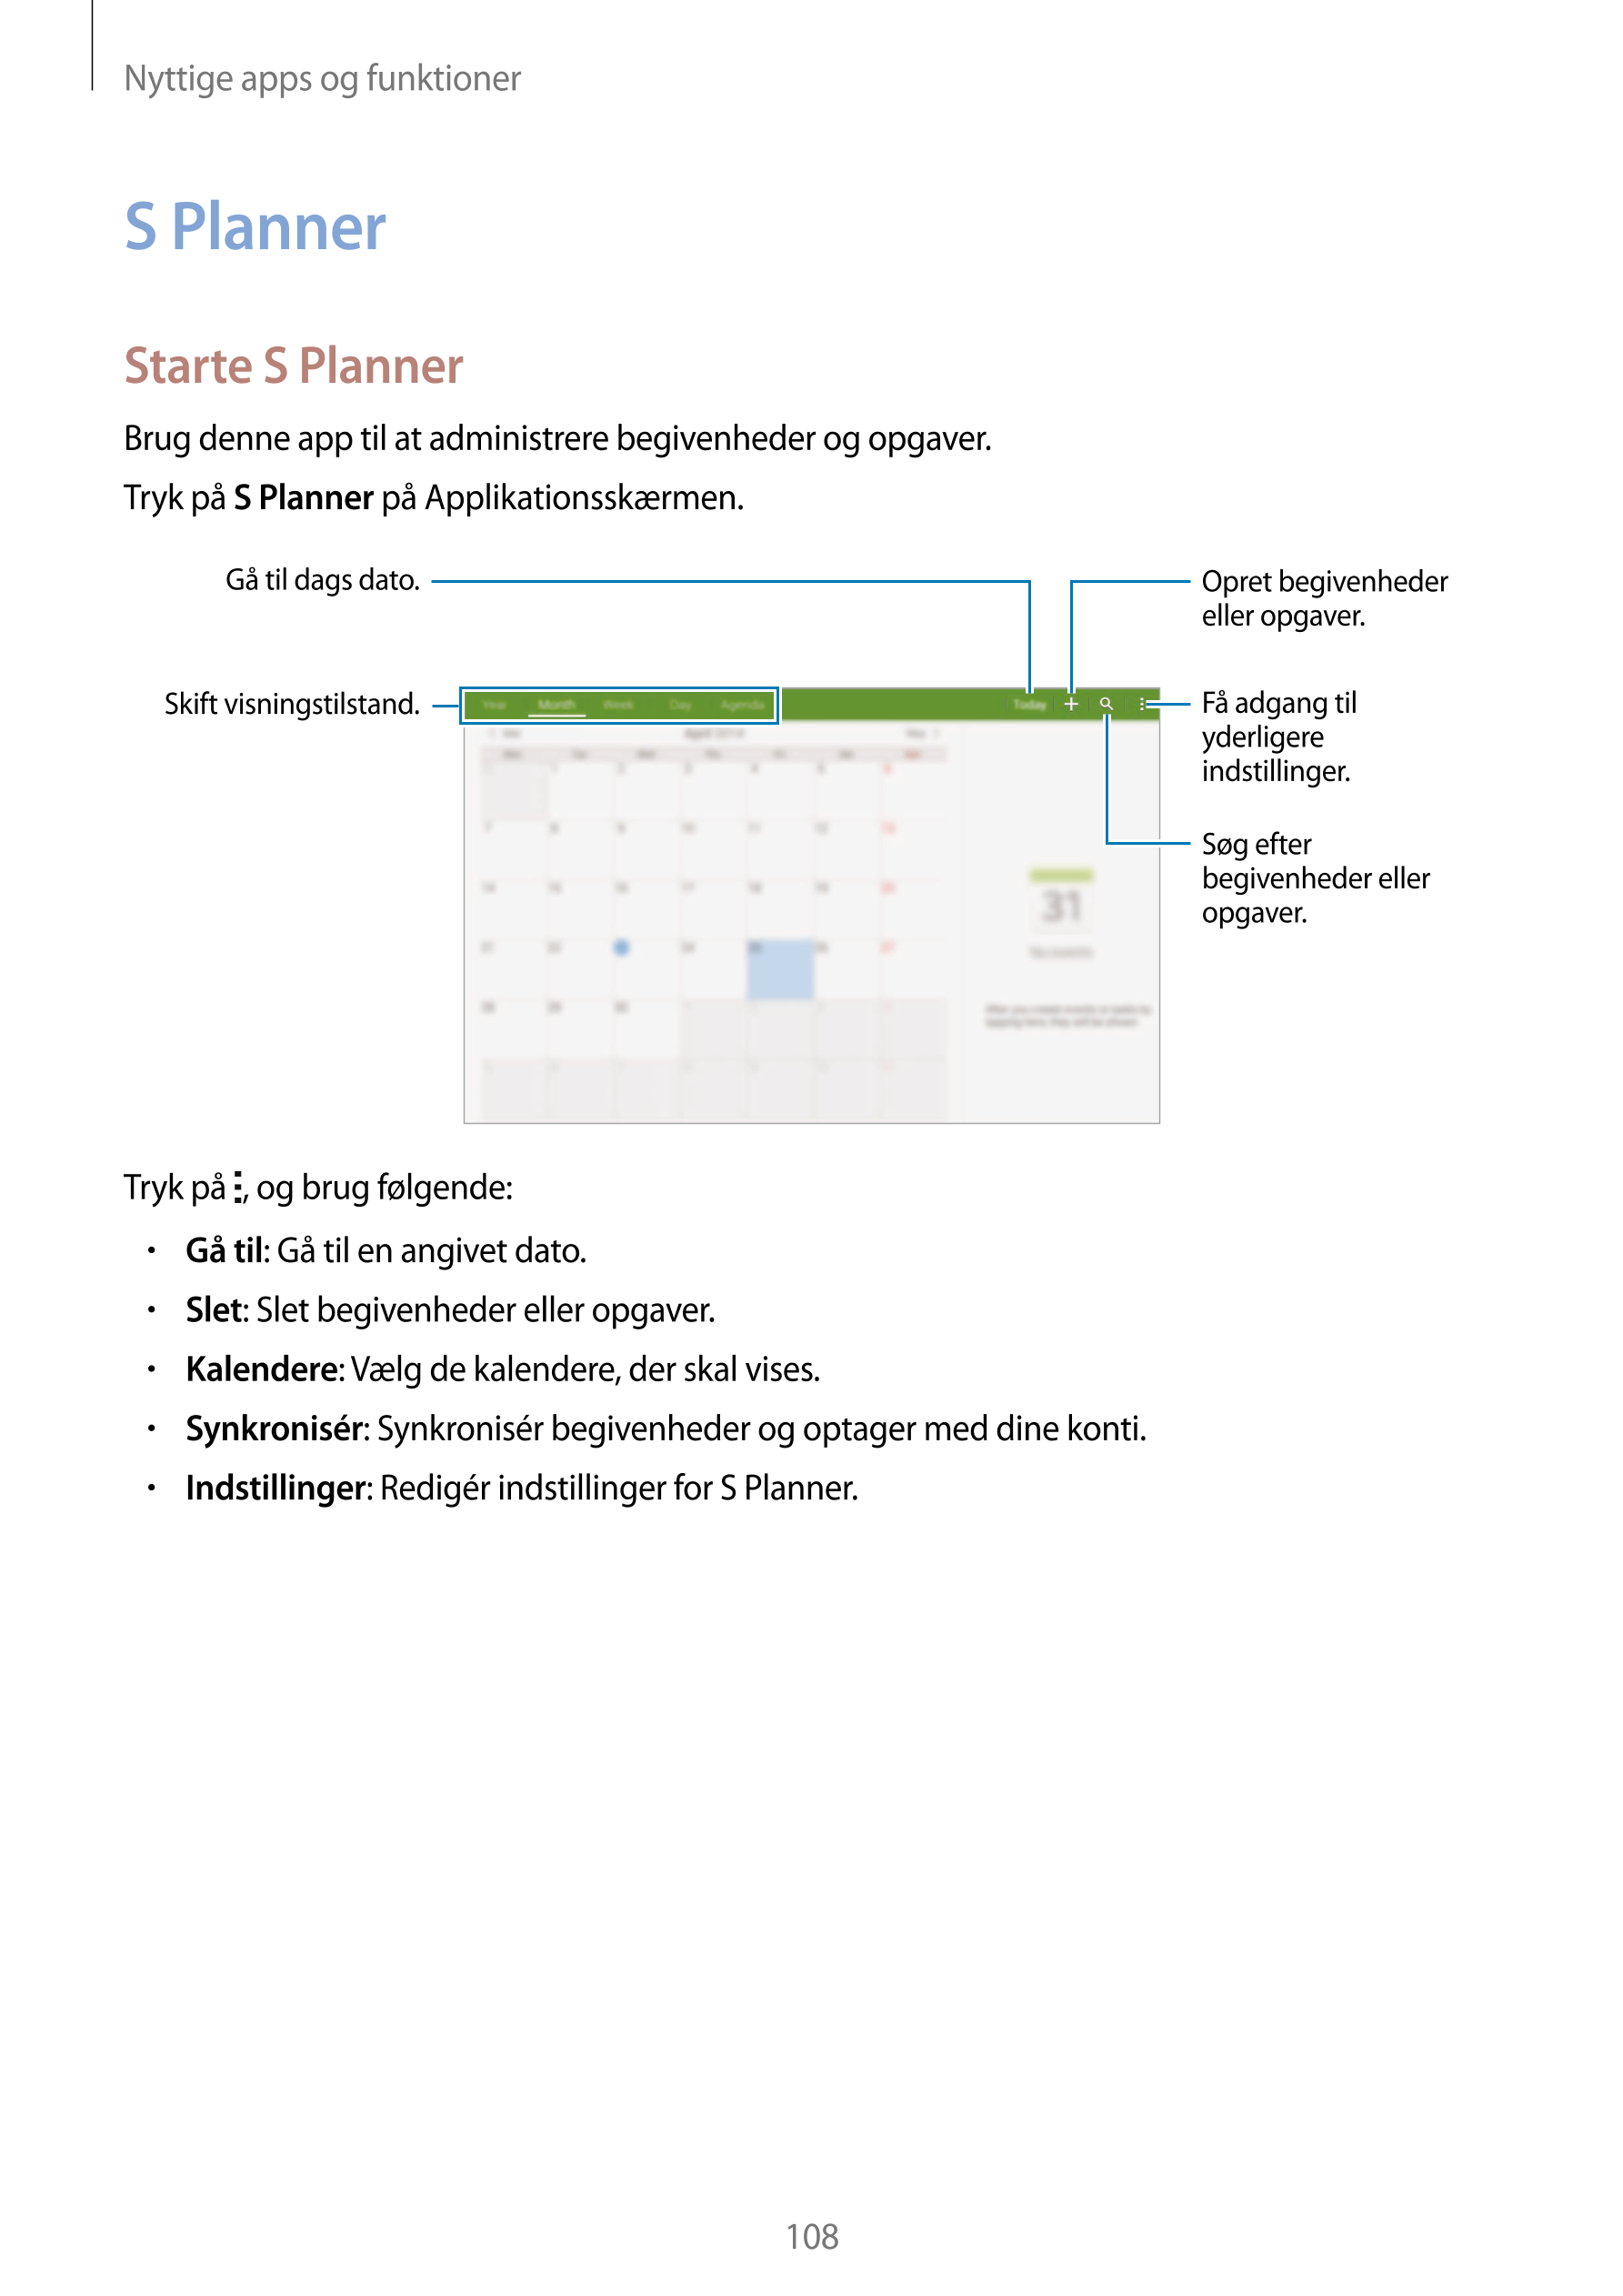 Nyttige apps og funktioner
S Planner
Starte S Planner
Brug denne app til at administrere begivenheder og opgaver.
Tryk på  S Pla